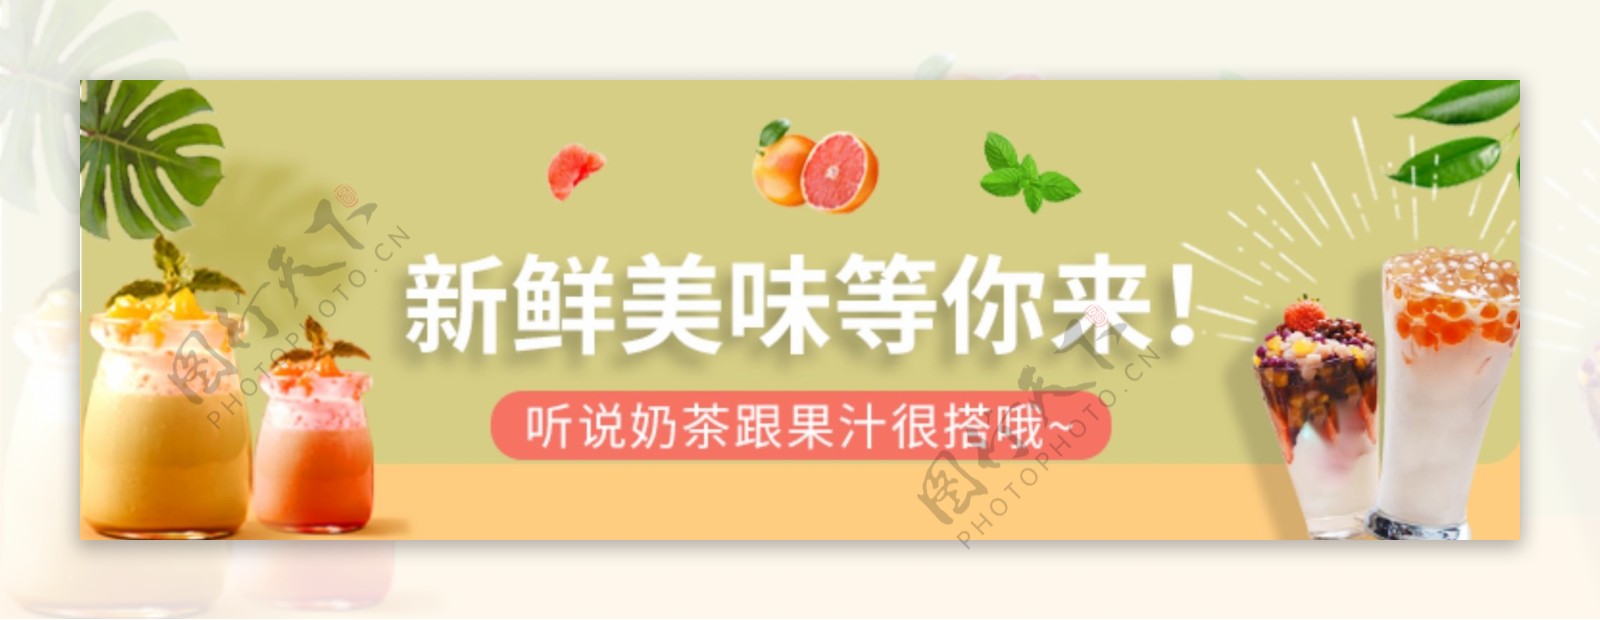 奶茶banner